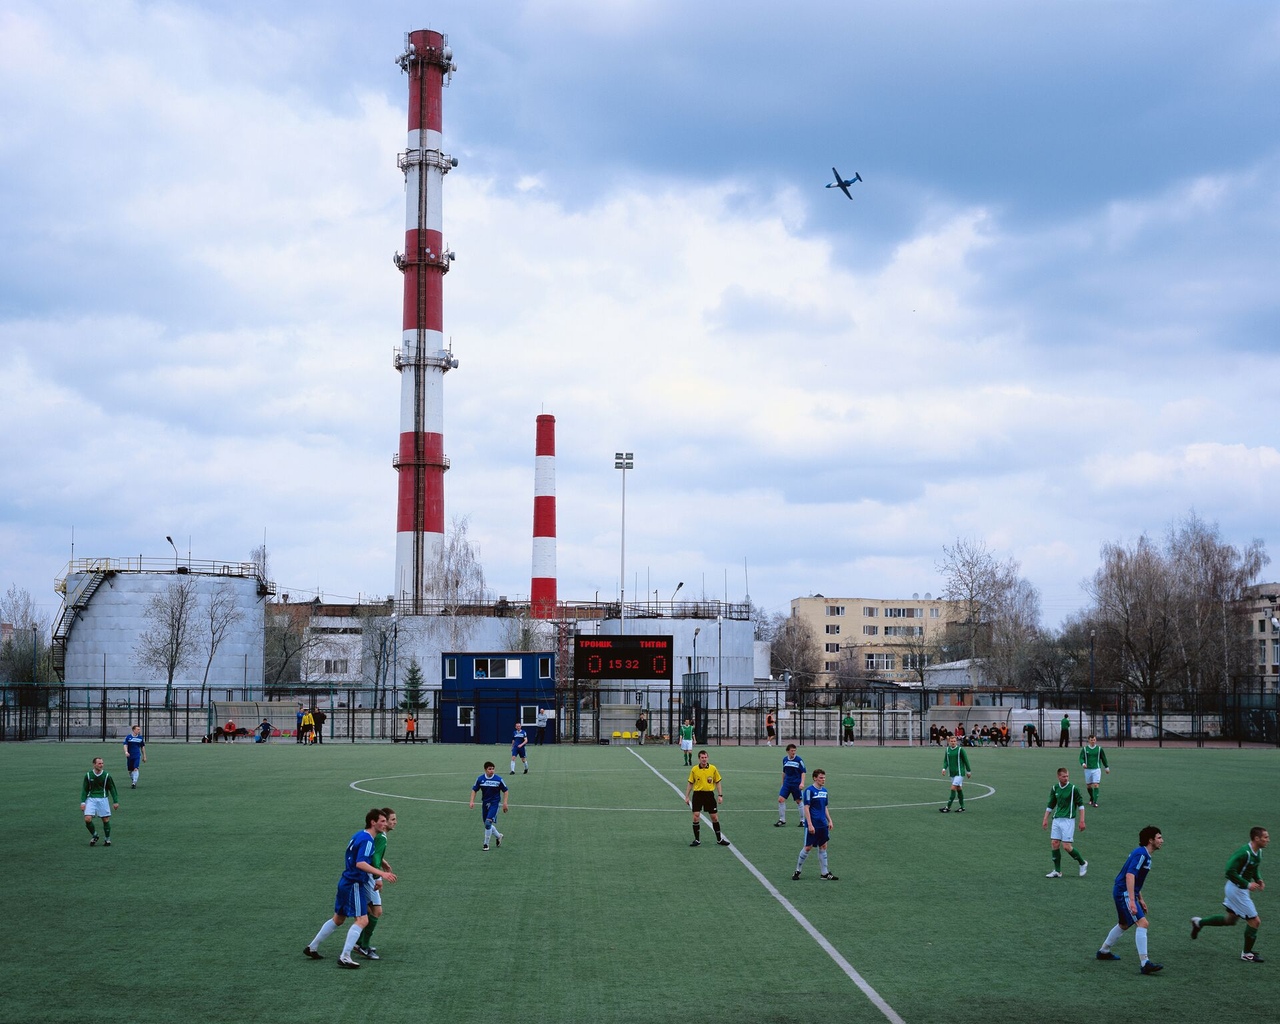 Сергей Новиков преподносит российский пейзаж как грандиозную декорацию для любительских футбольных матчей